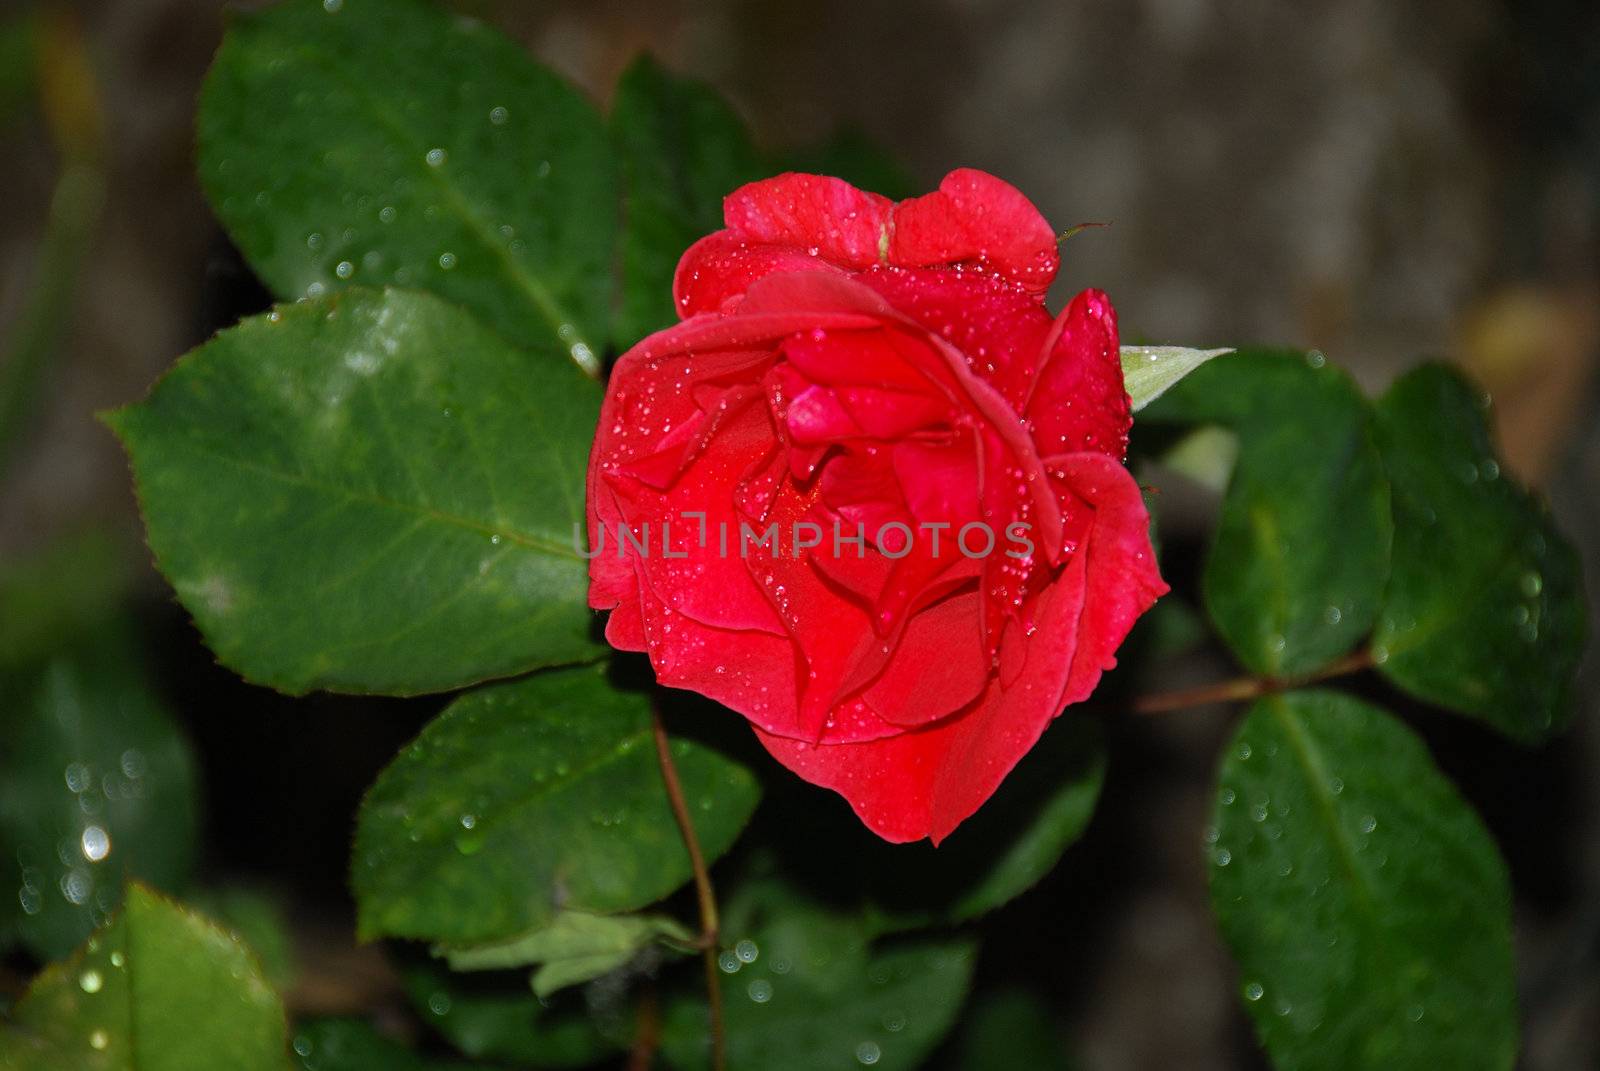 spring roses with rain drpos